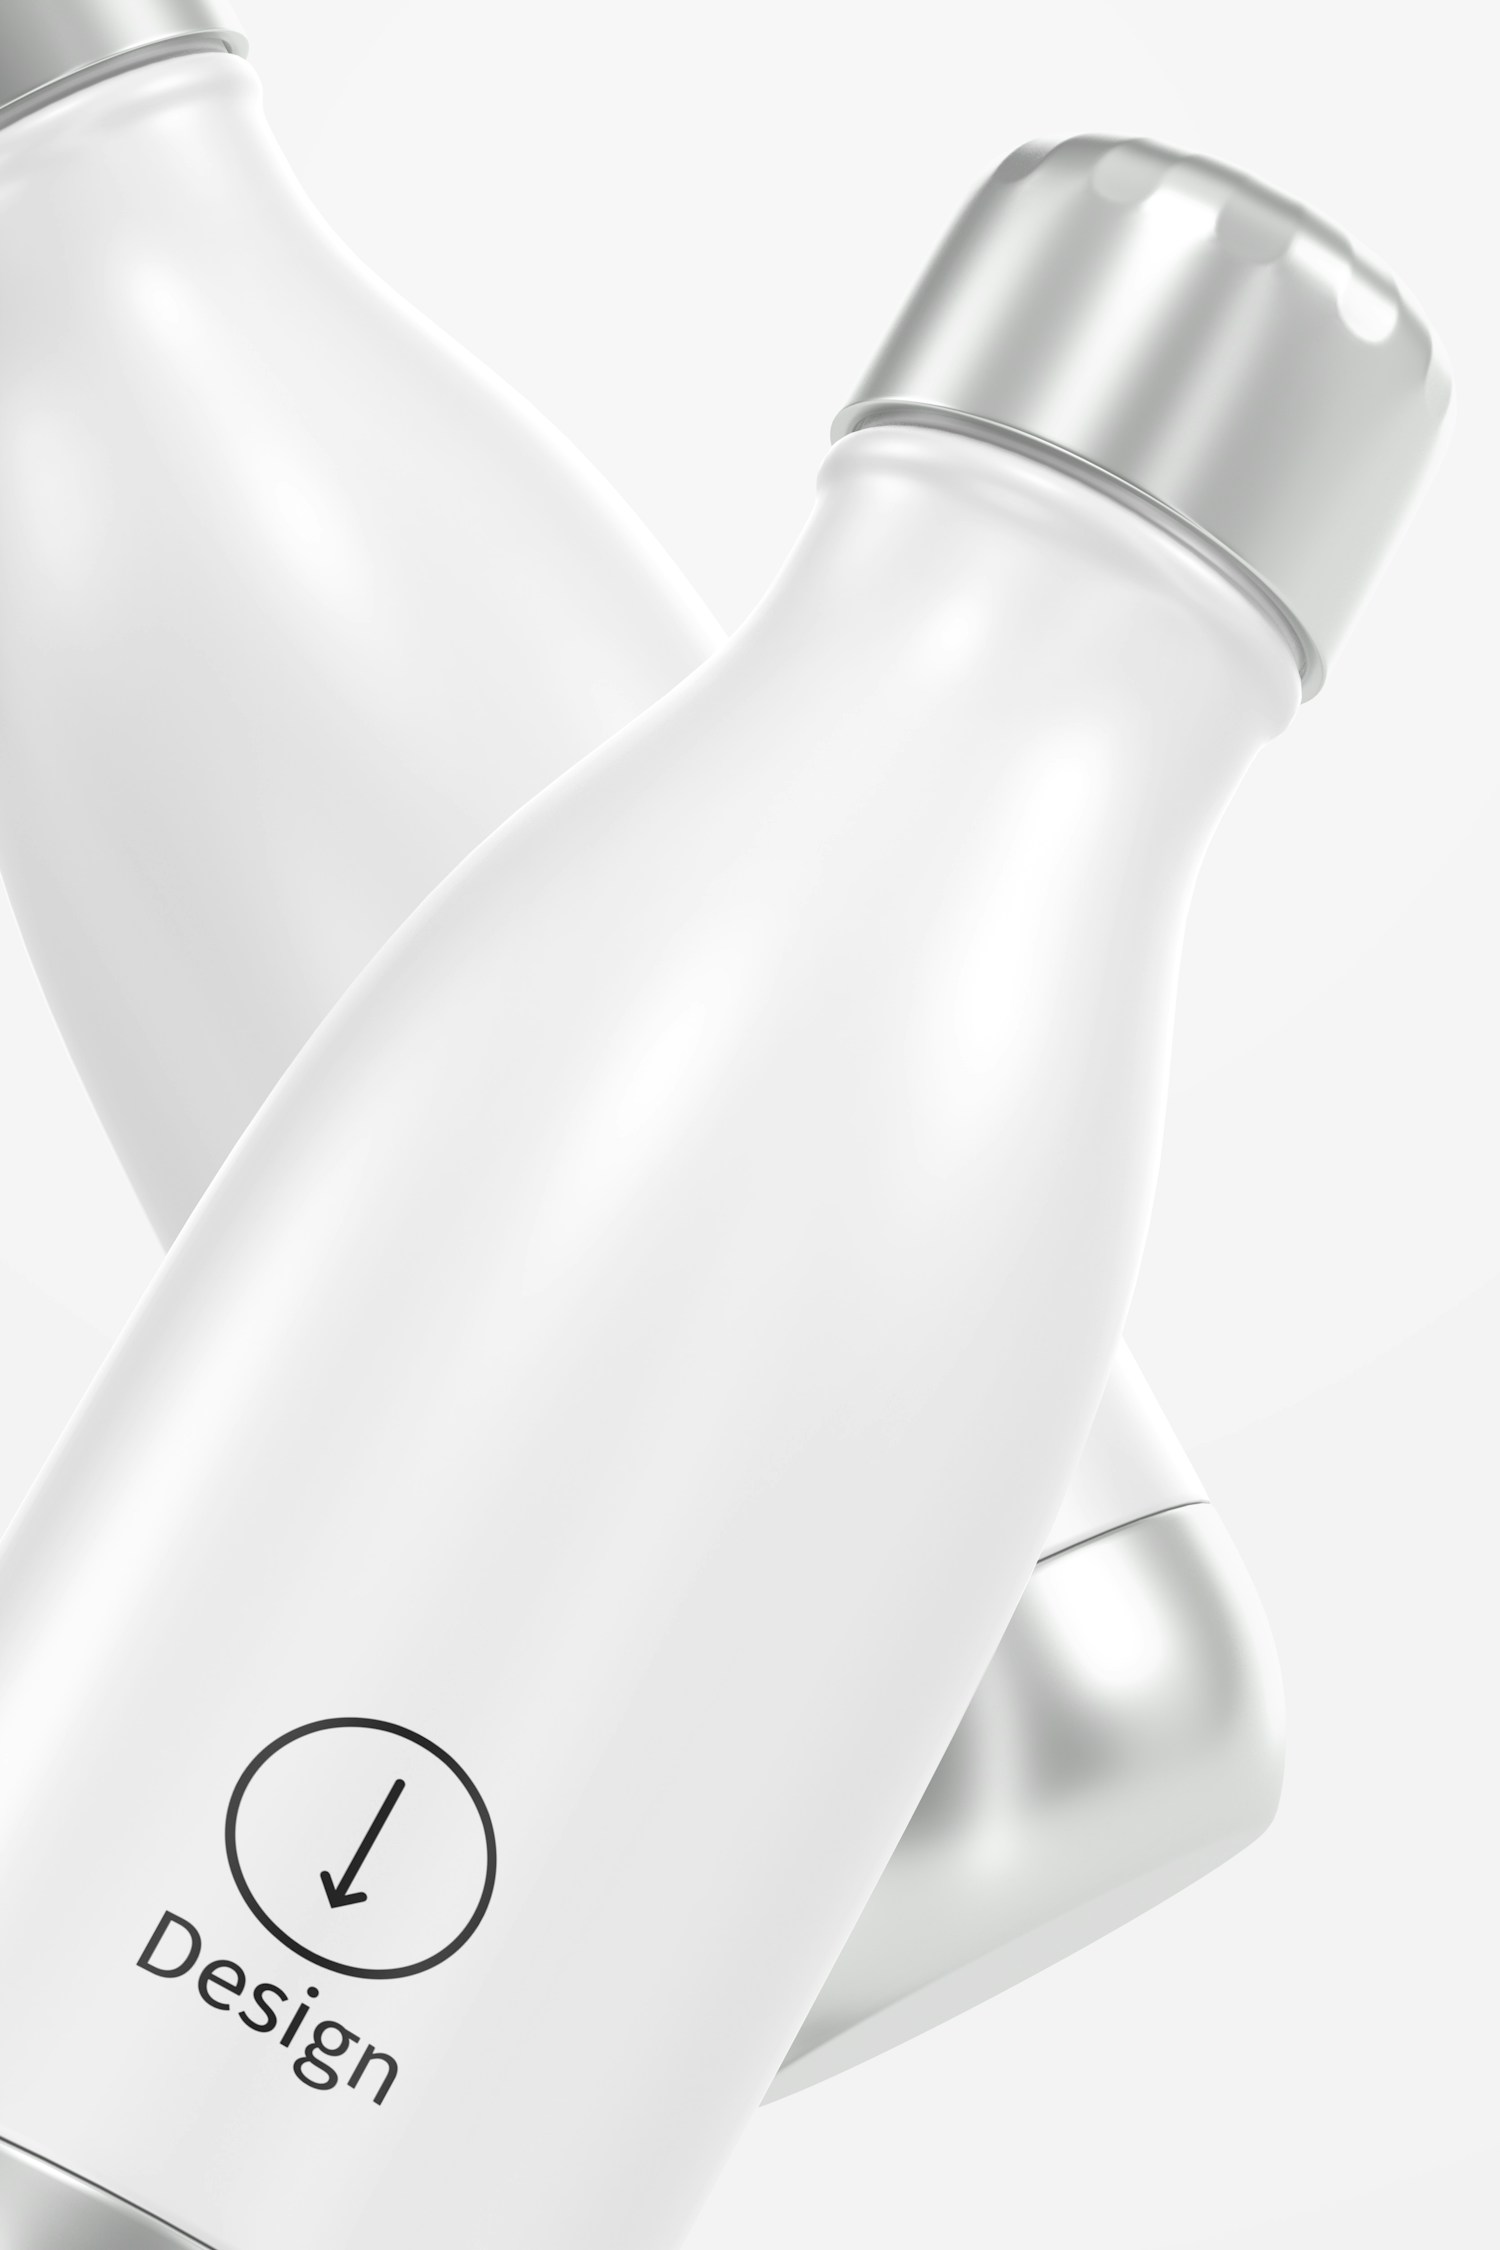 17 oz Metallic Water Bottle Mockup, Close Up